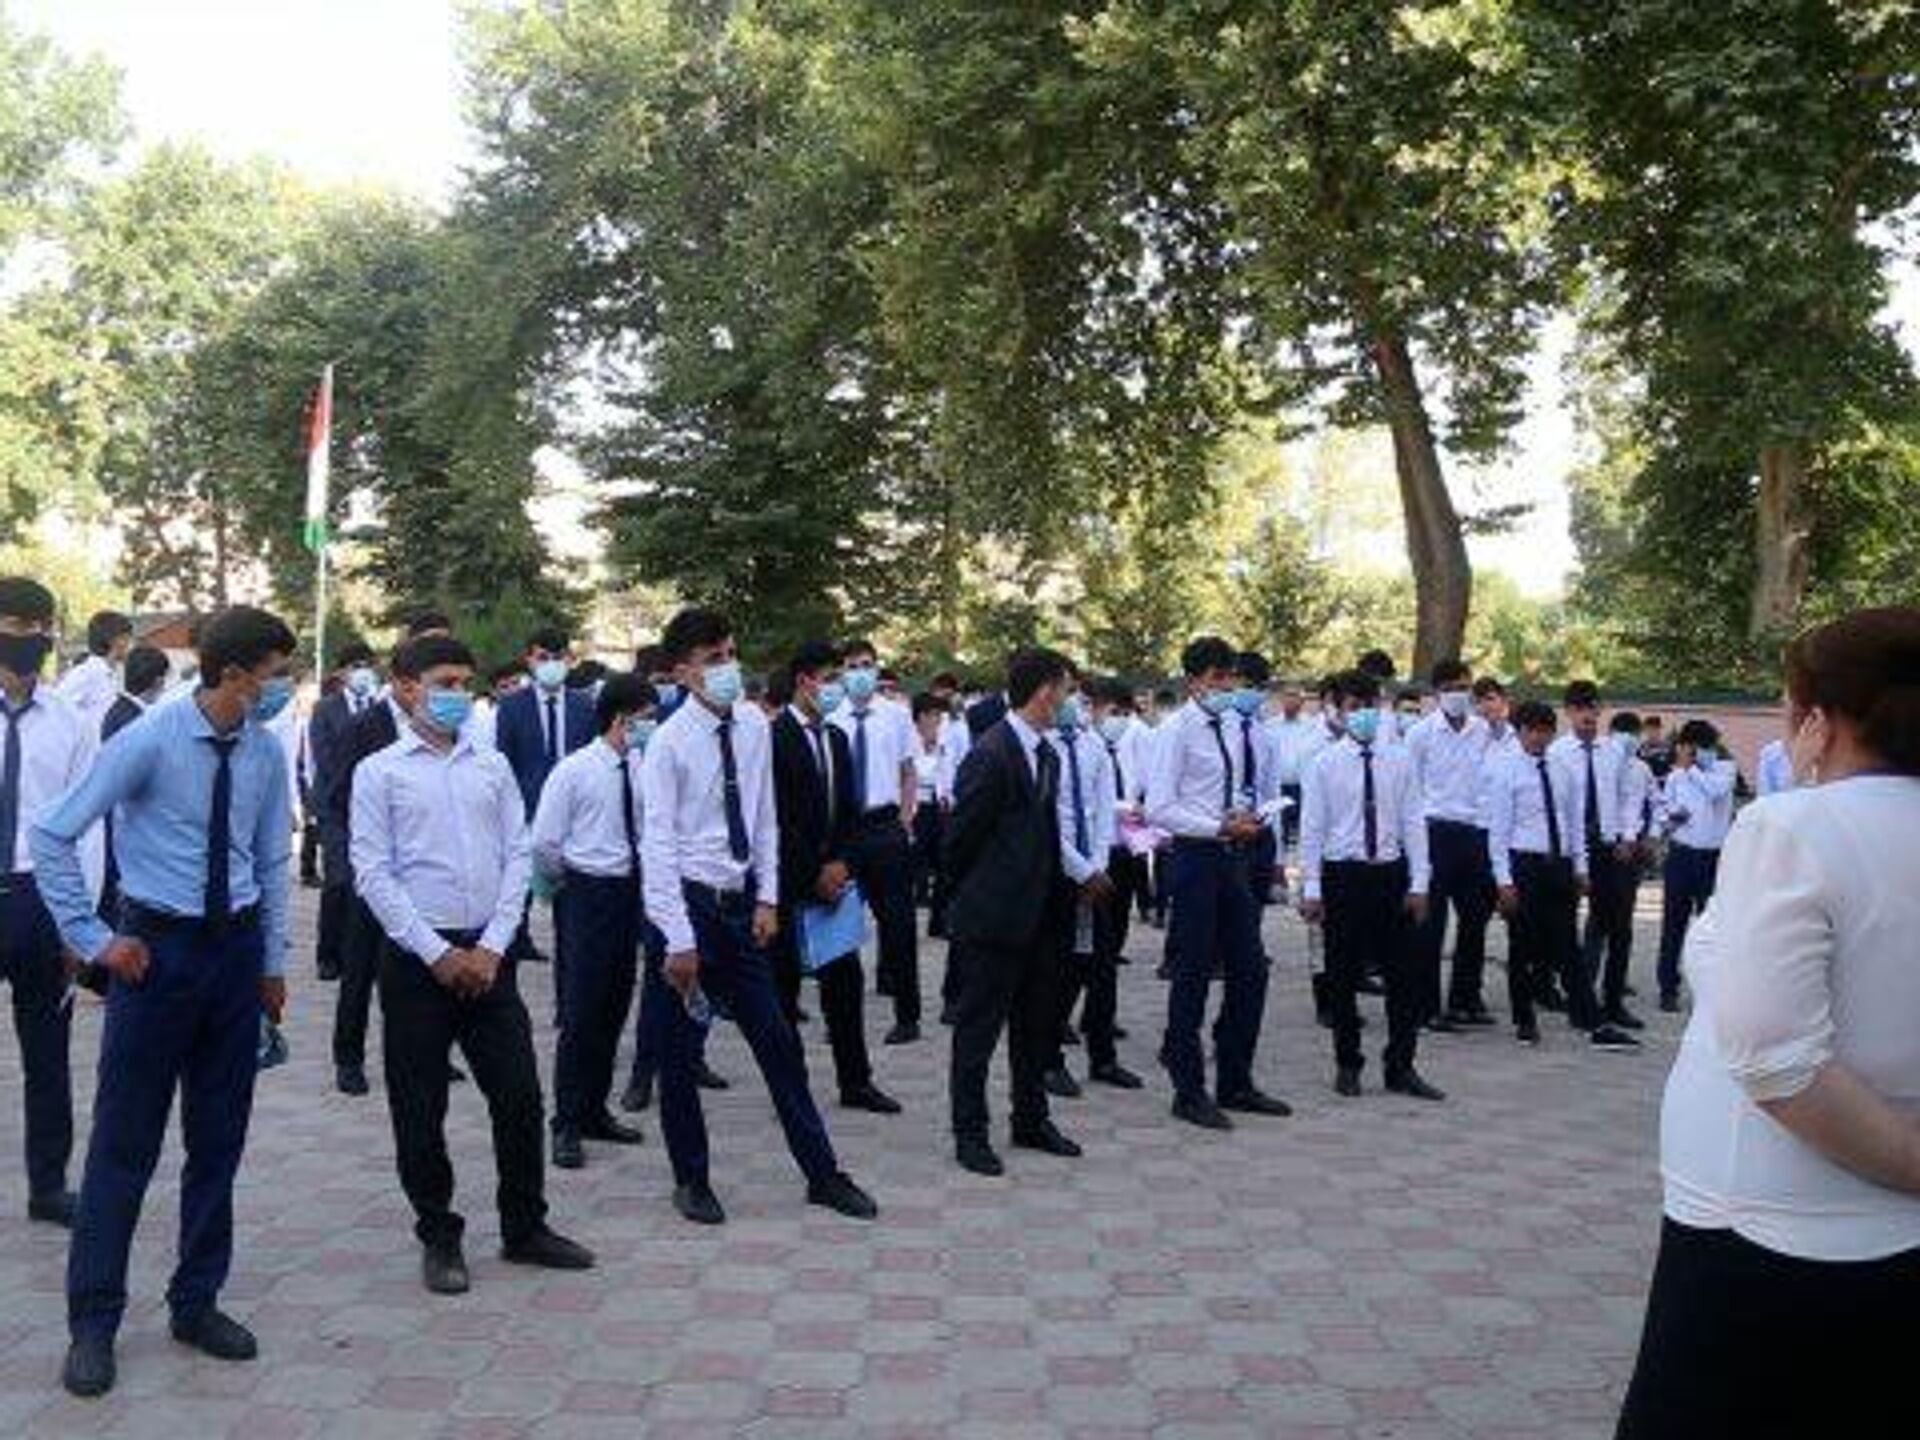 Таджикские образования